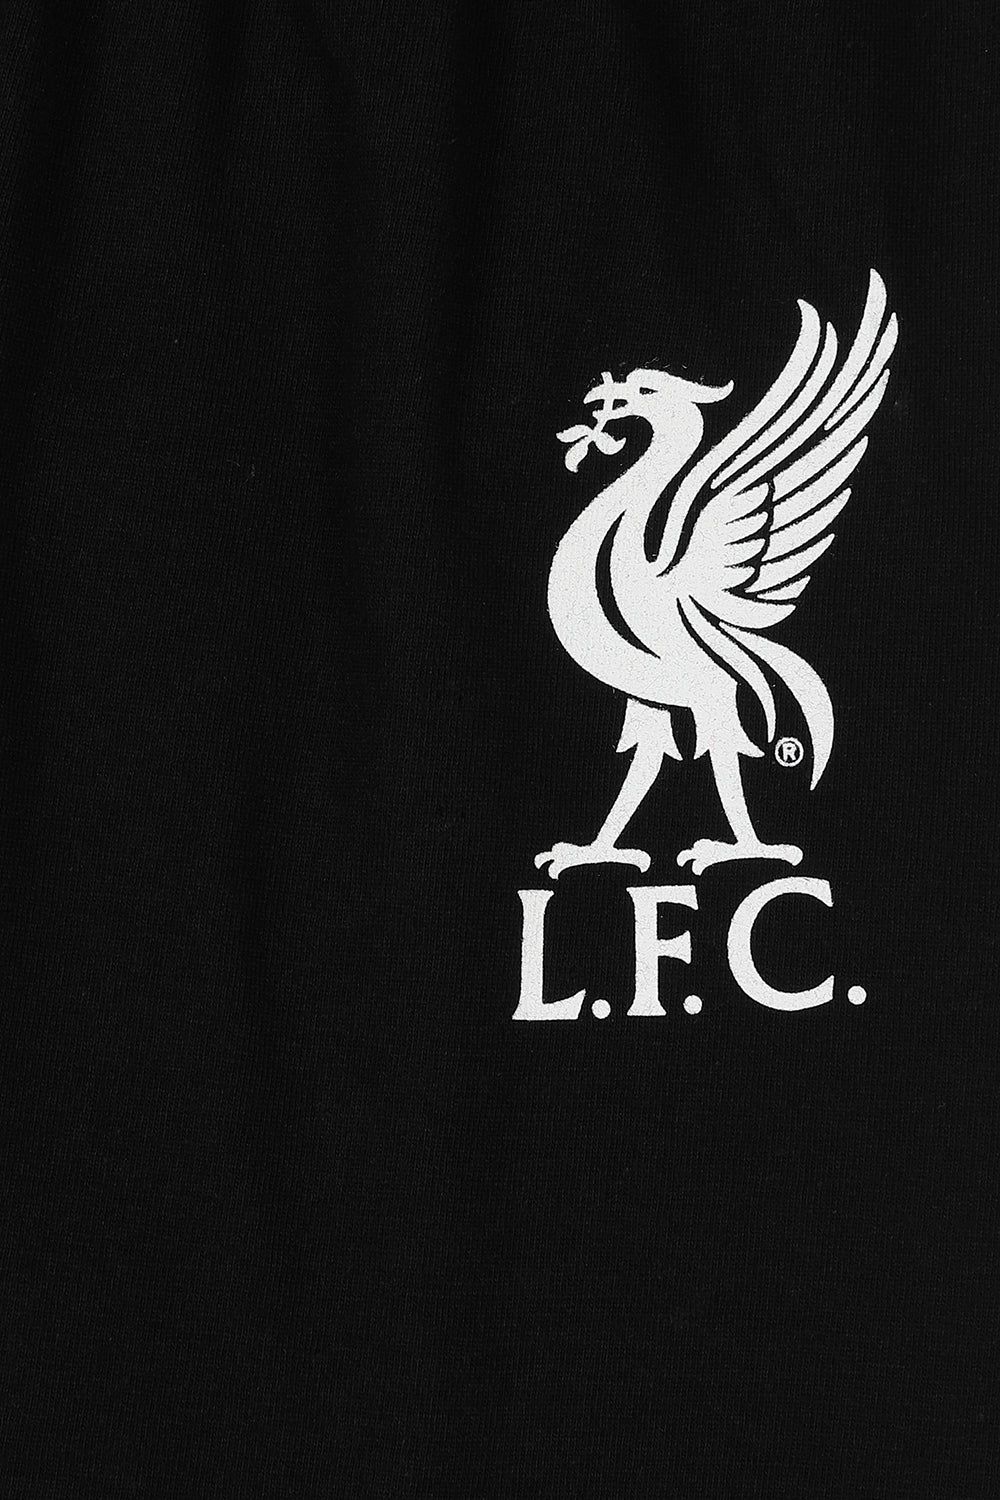 Mens Liverpool FC Red Black Short LFC Pyjamas - Pyjamas.com